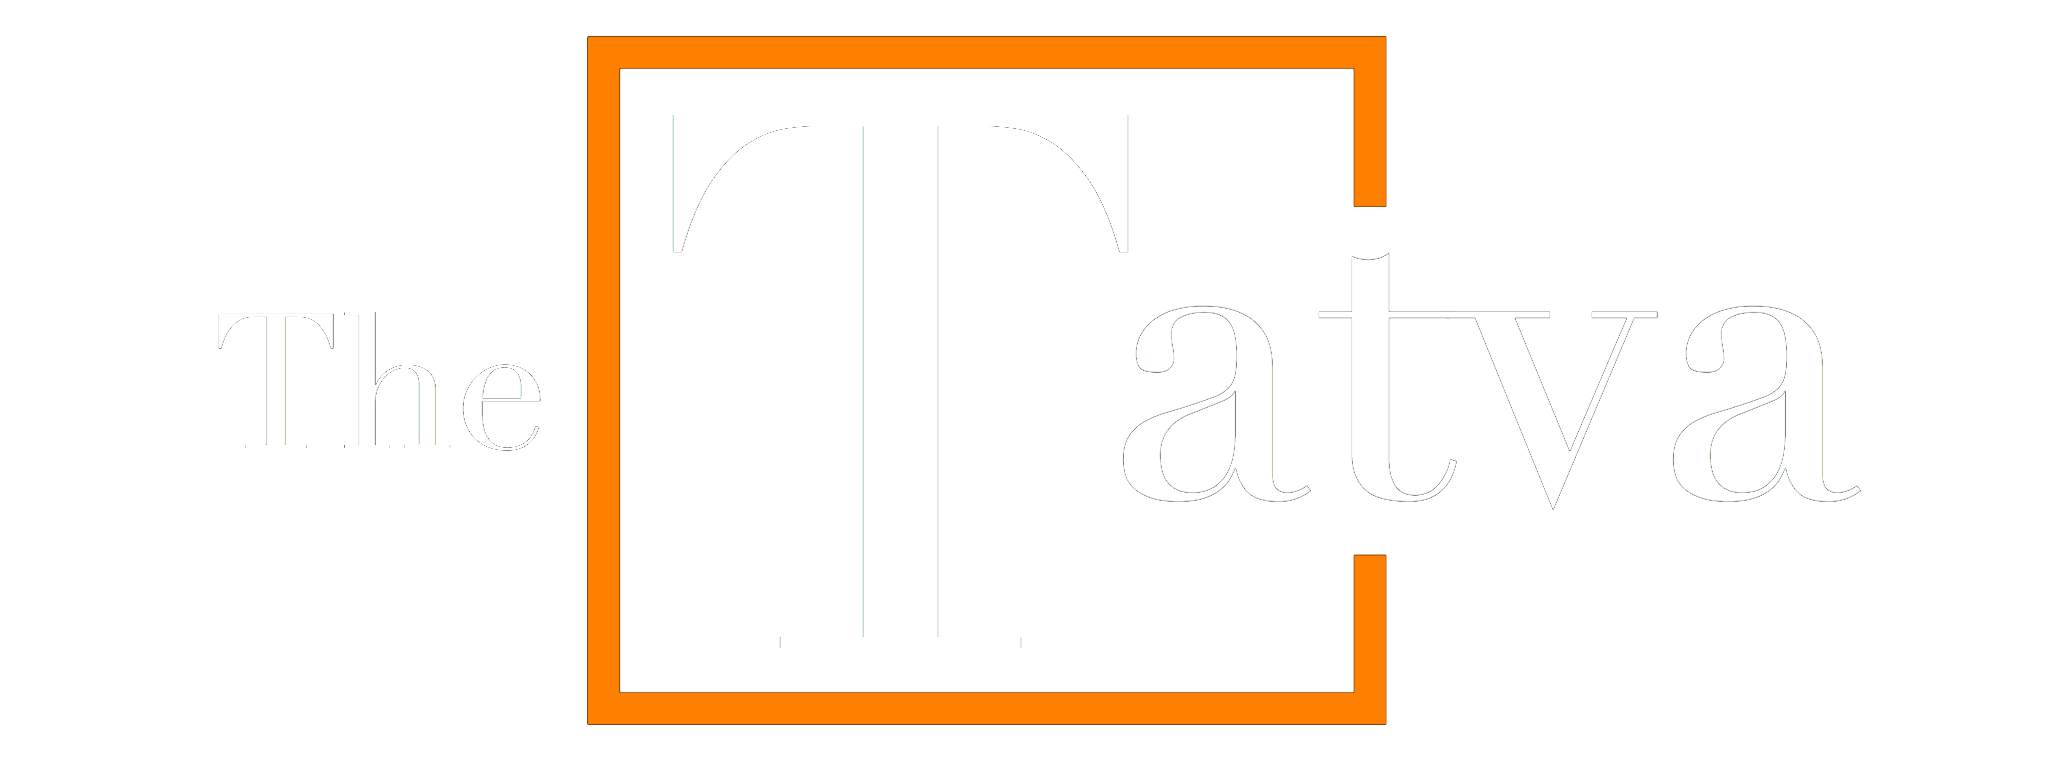 The Tatva